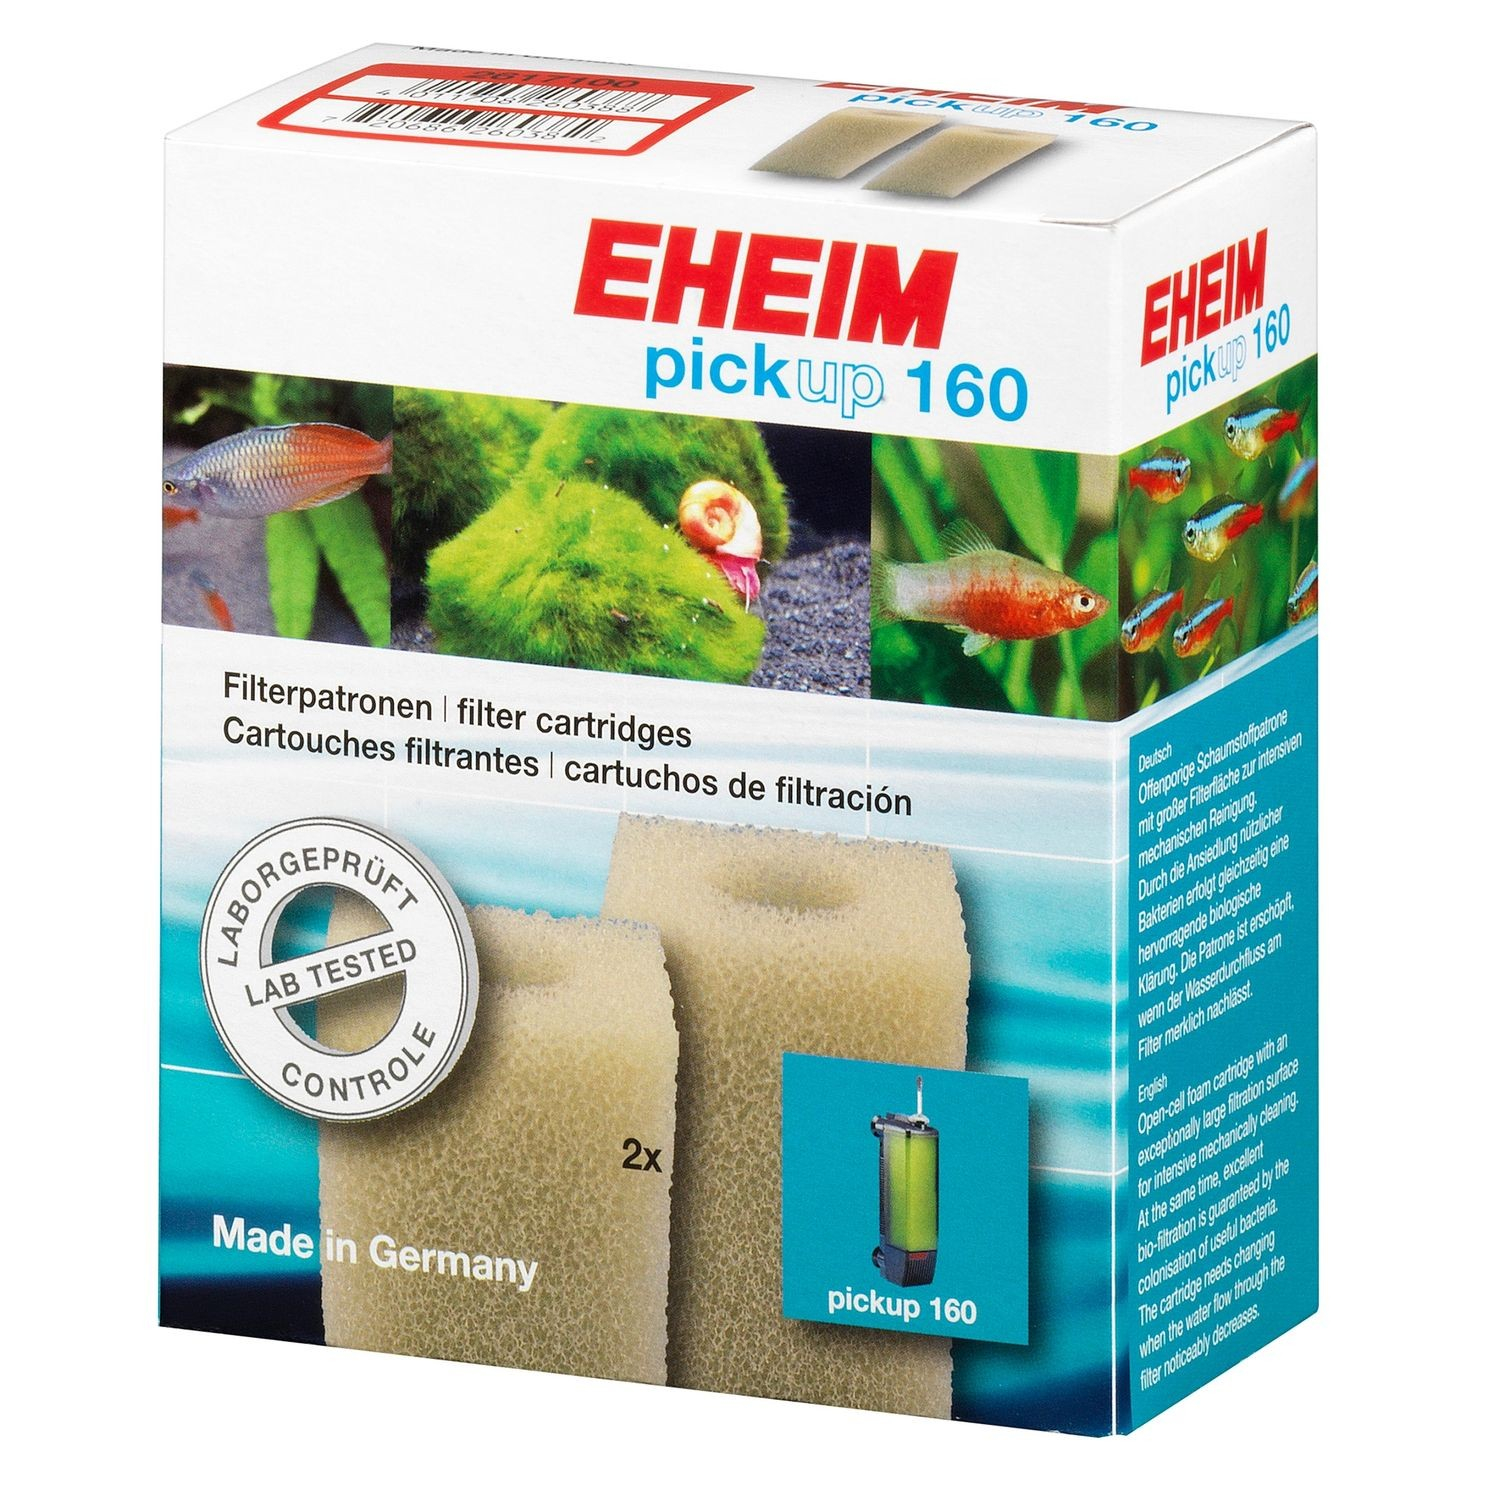 Filterpatronen voor EHEIM PickUp